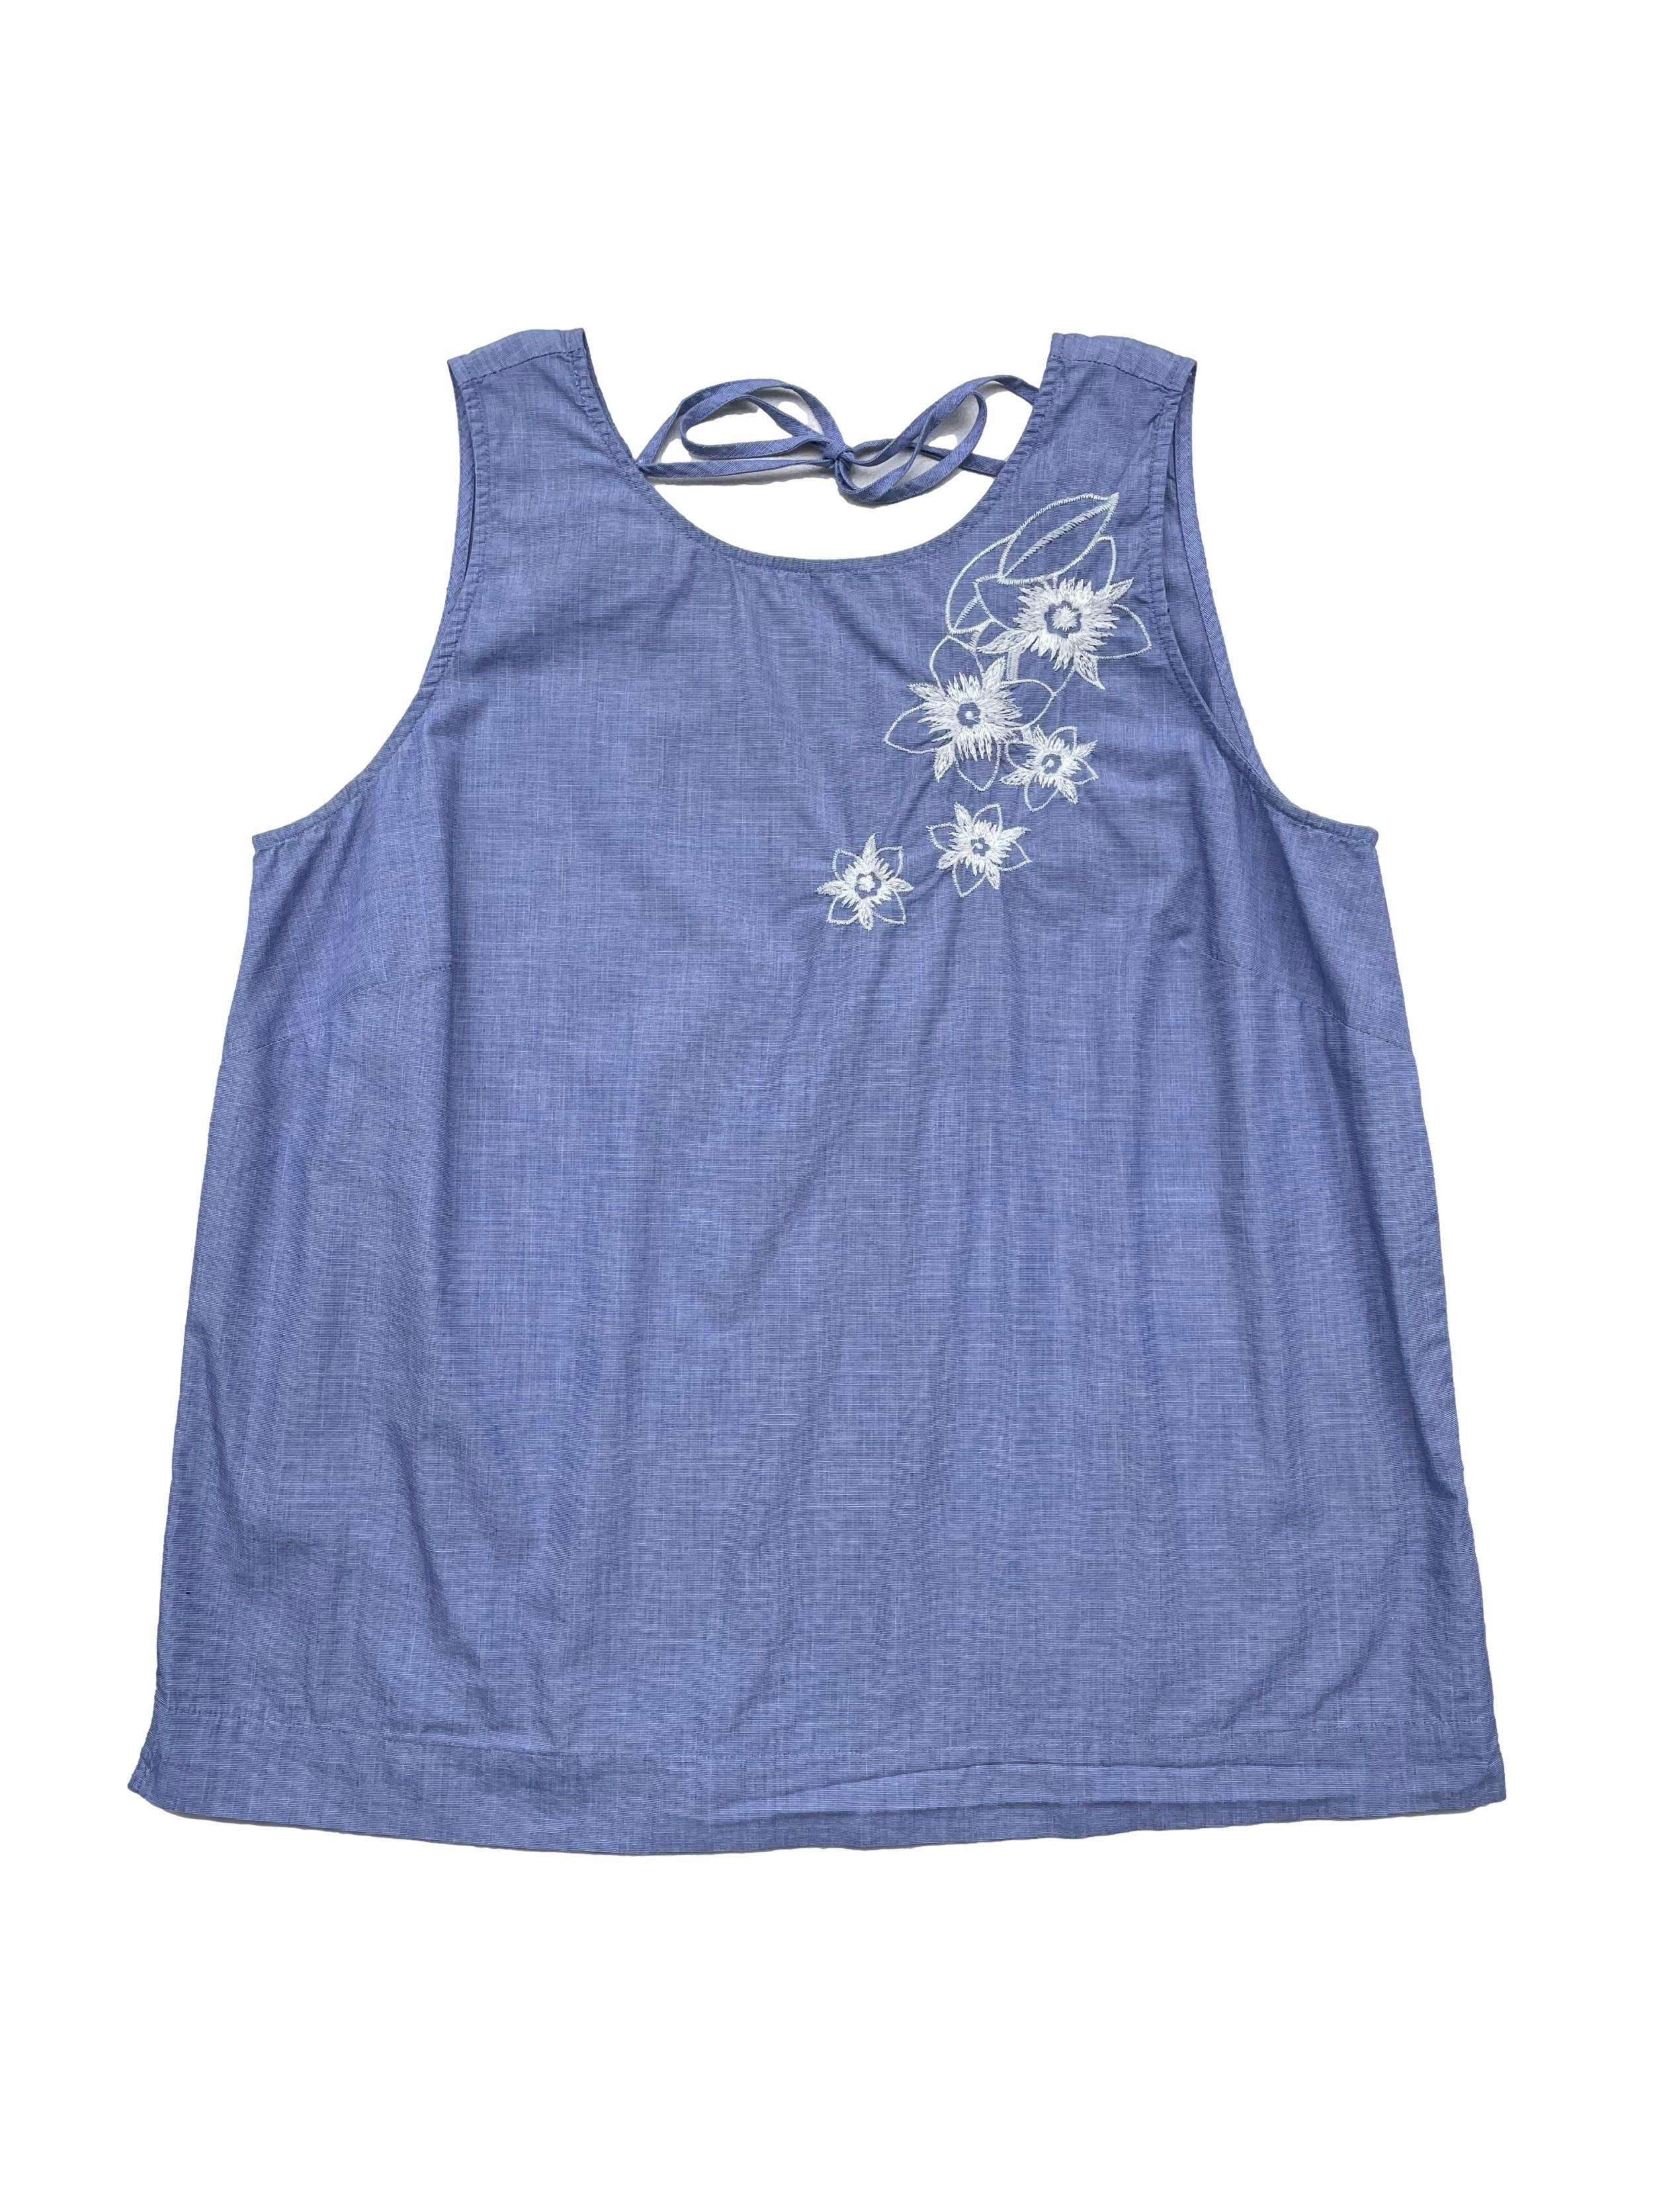 Blusa Ann Taylor de algodón camisa jaspeado azul y blanco, bordado de flores, se amarra en la espalda. Busto 100cm Largo 60cm